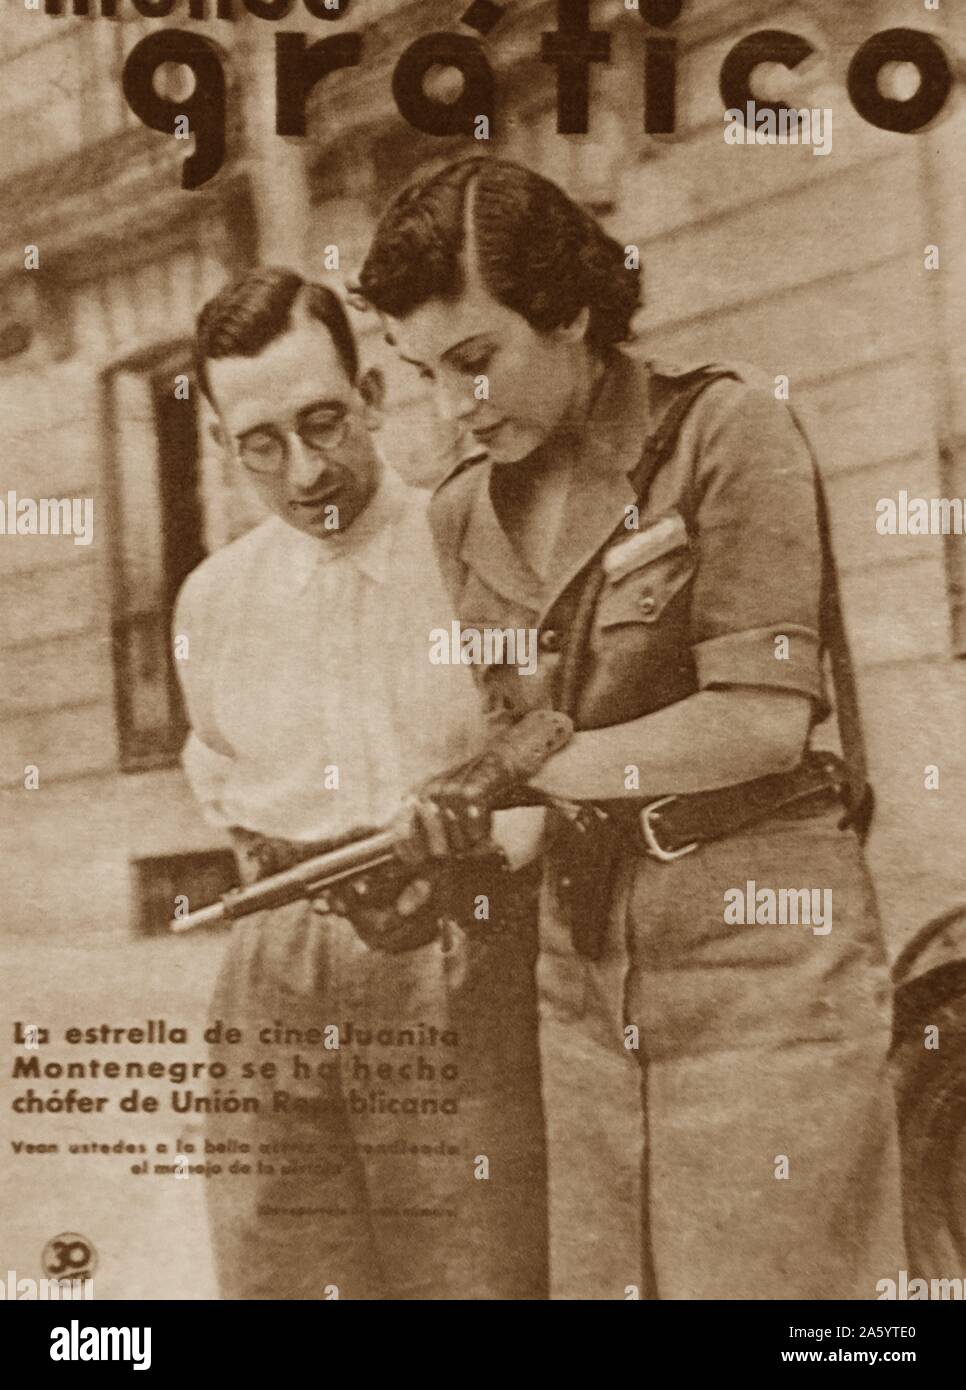 Spanische republikanische Filmschauspielerin Juanita Montenegro an der Front cover von "Mundo Grafico ' während des spanischen Bürgerkriegs Stockfoto